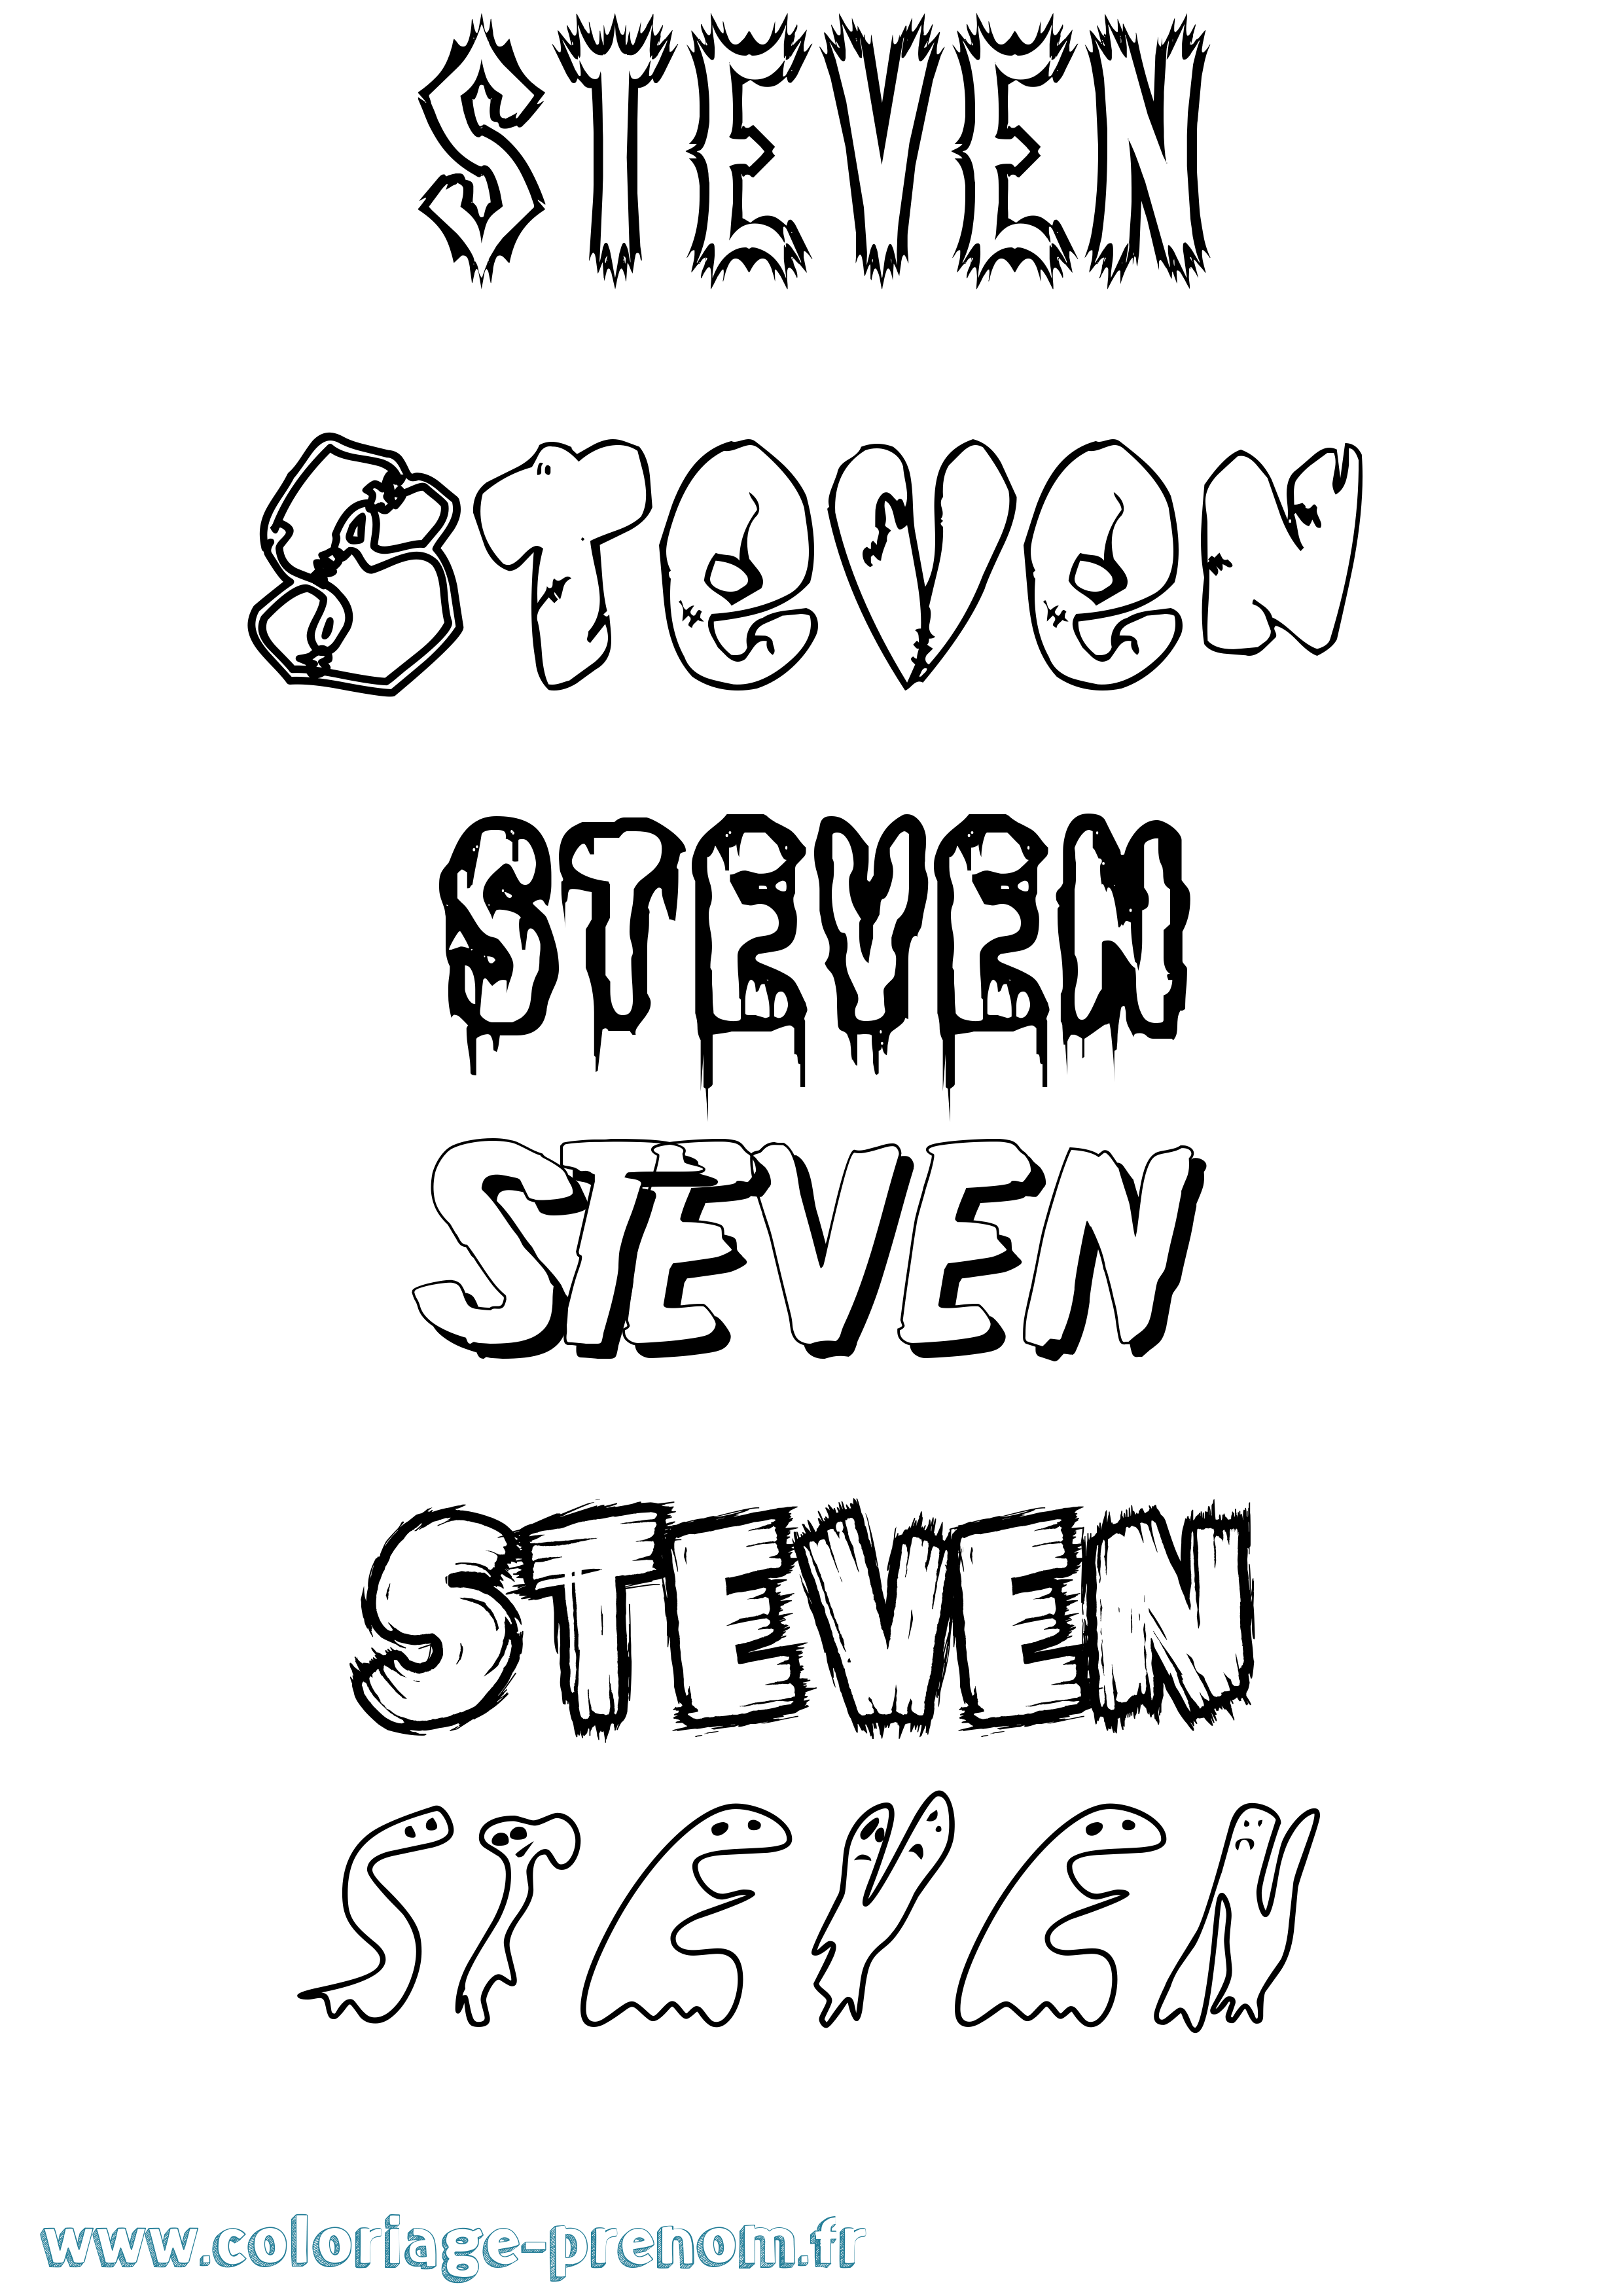 Coloriage prénom Steven Frisson